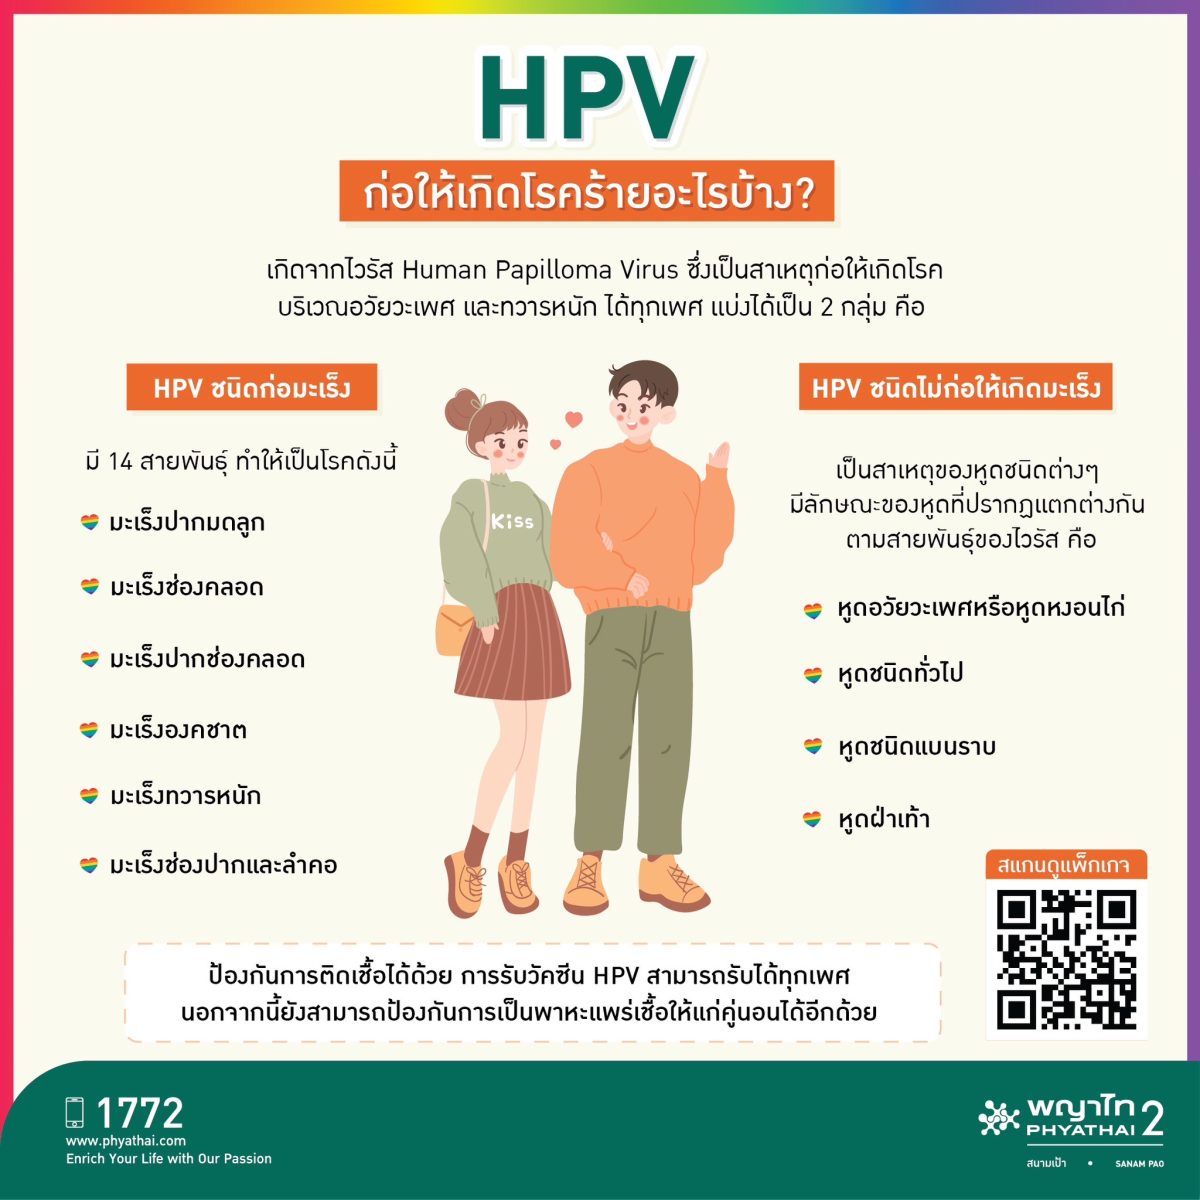 เตือนภัยโรคร้ายจากเพศสัมพันธ์ ป้องกันไว้ก่อนได้ด้วย HPV Vaccine ตั้งแต่วัยรุ่นถึงผู้ใหญ่